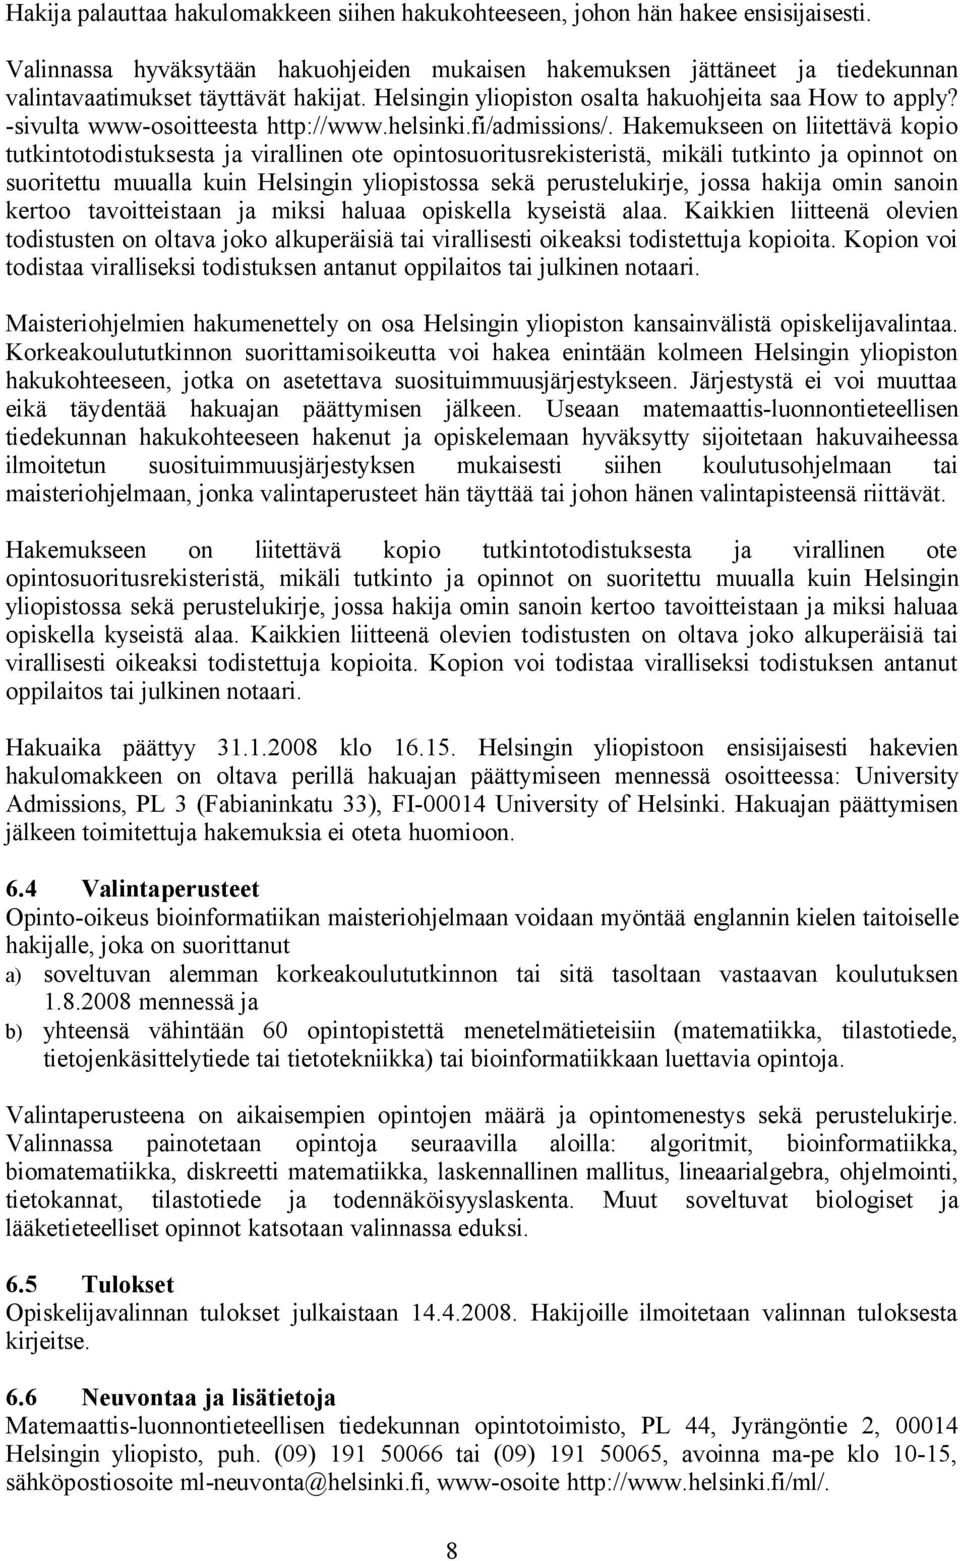 -sivulta www-osoitteesta http://www.helsinki.fi/admissions/.